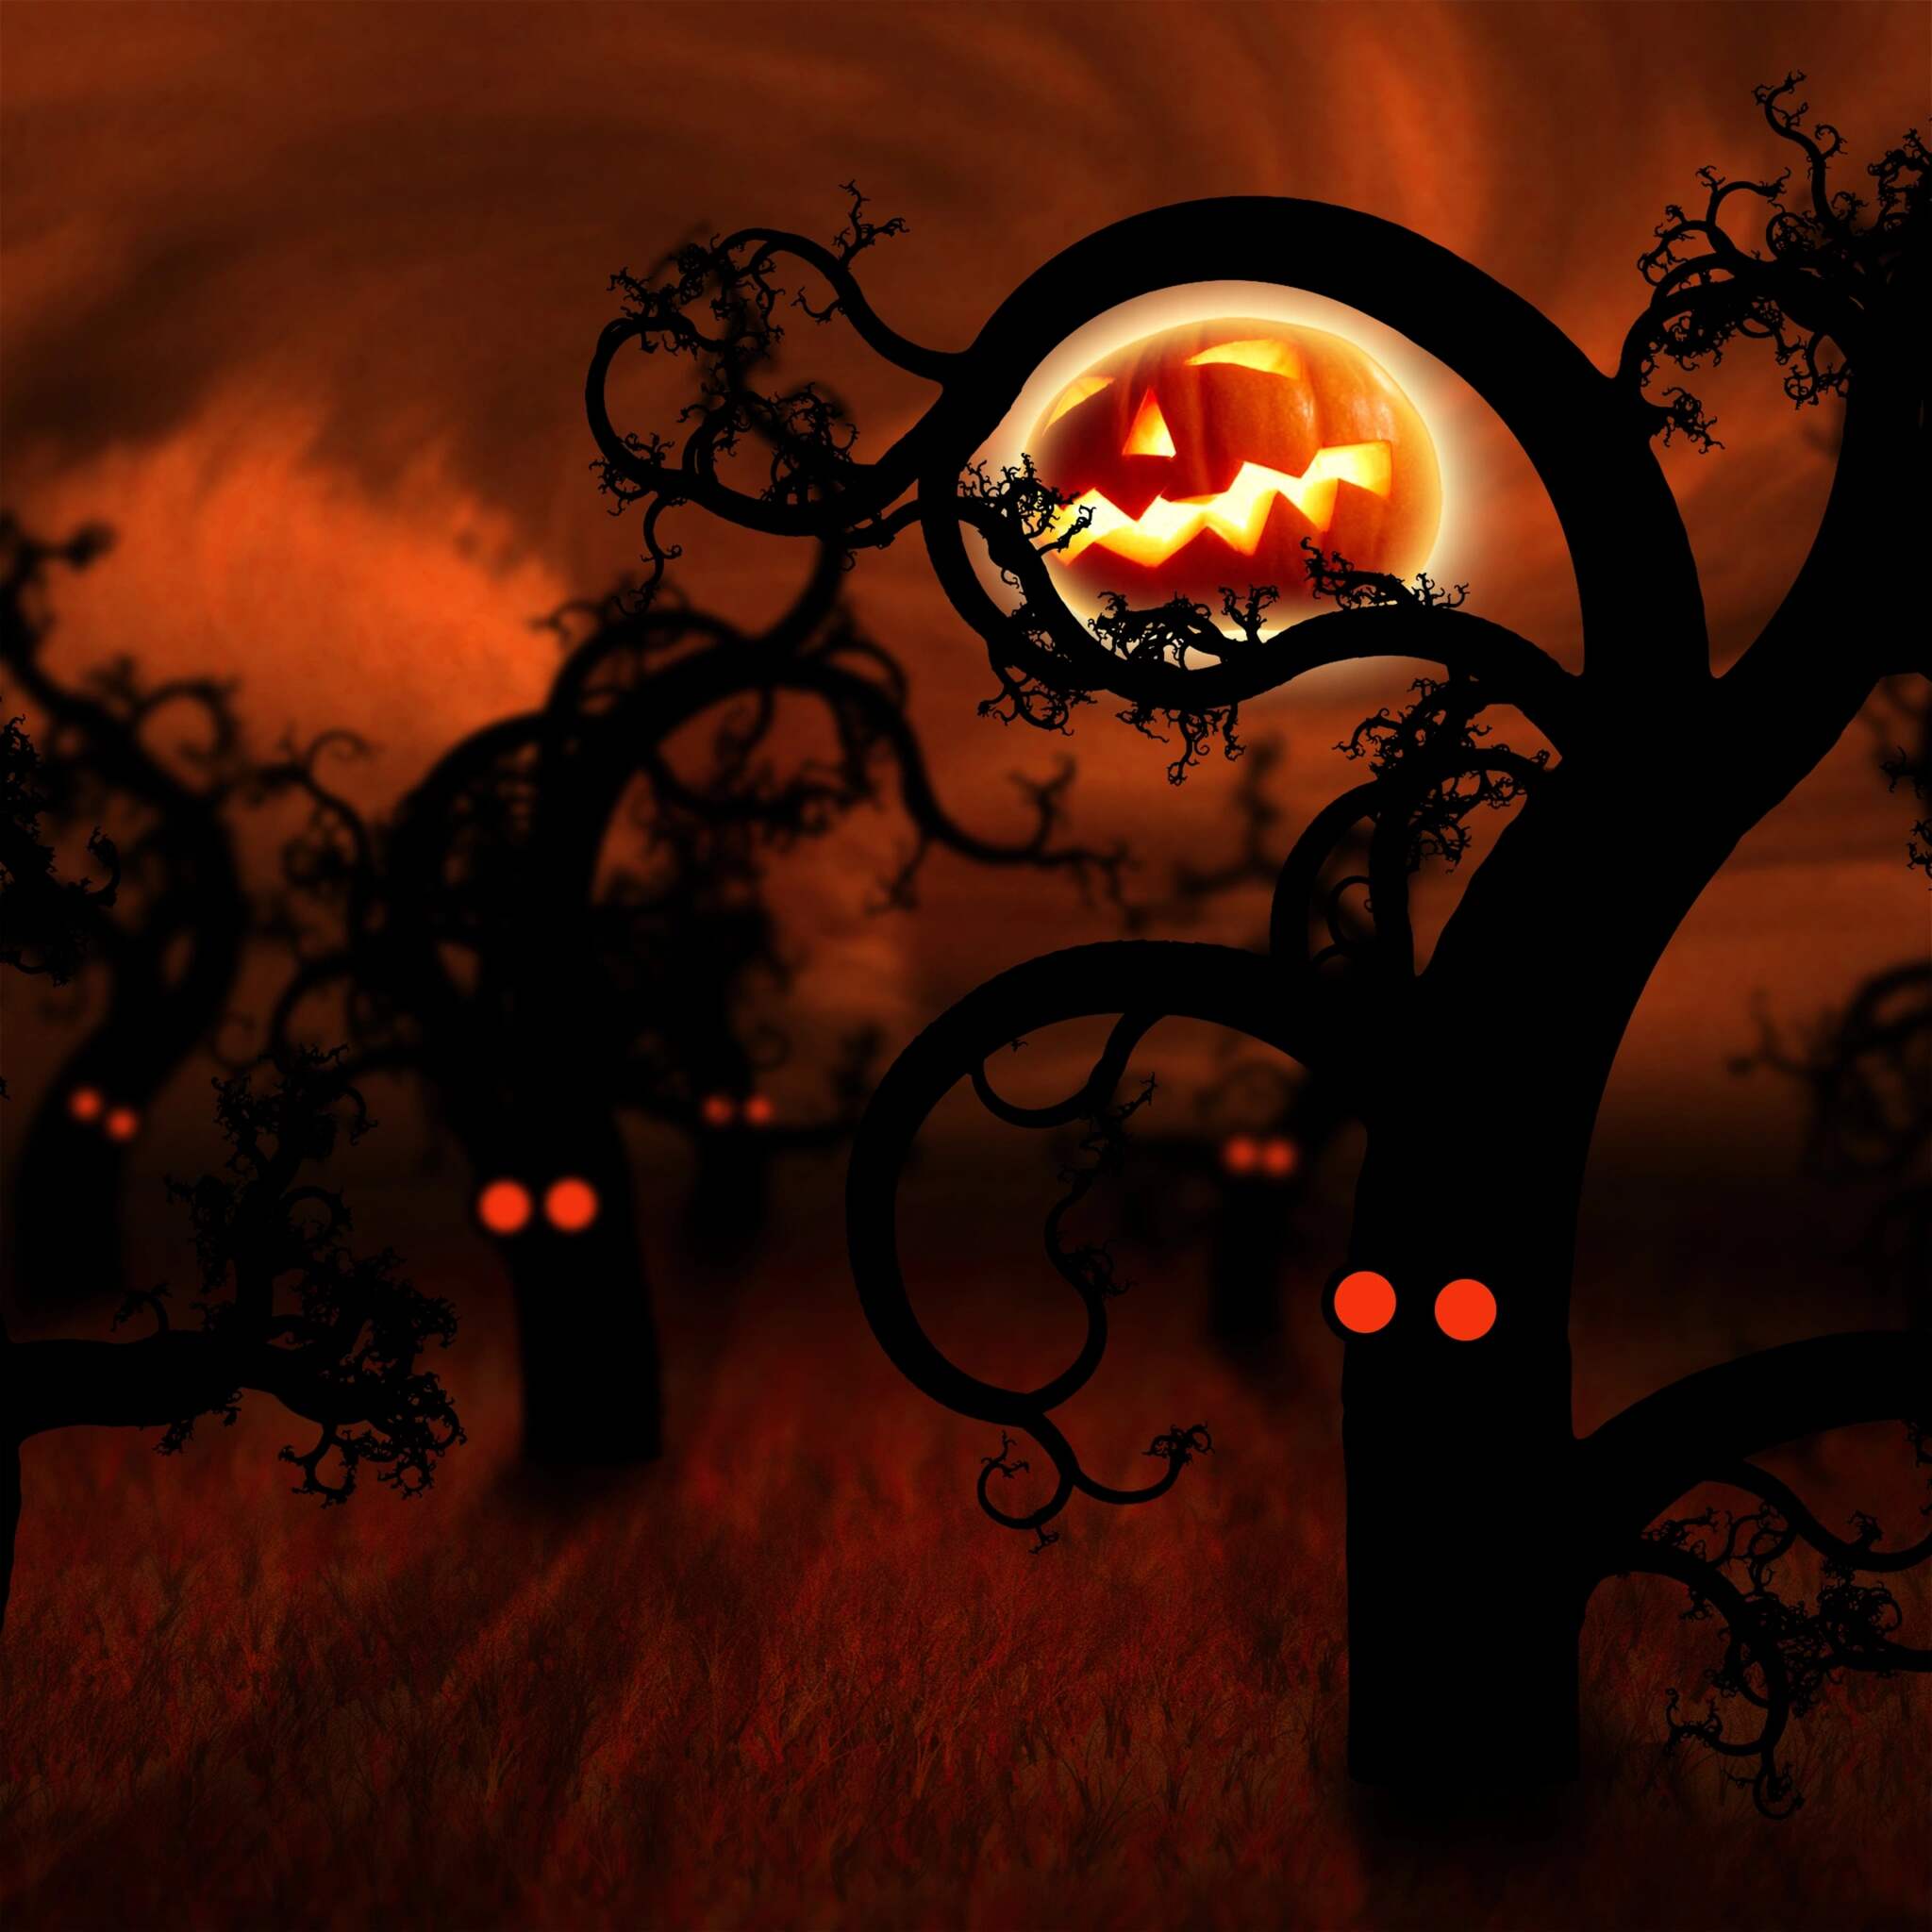 Halloween background with a pumpkin on a tree - Dark orange